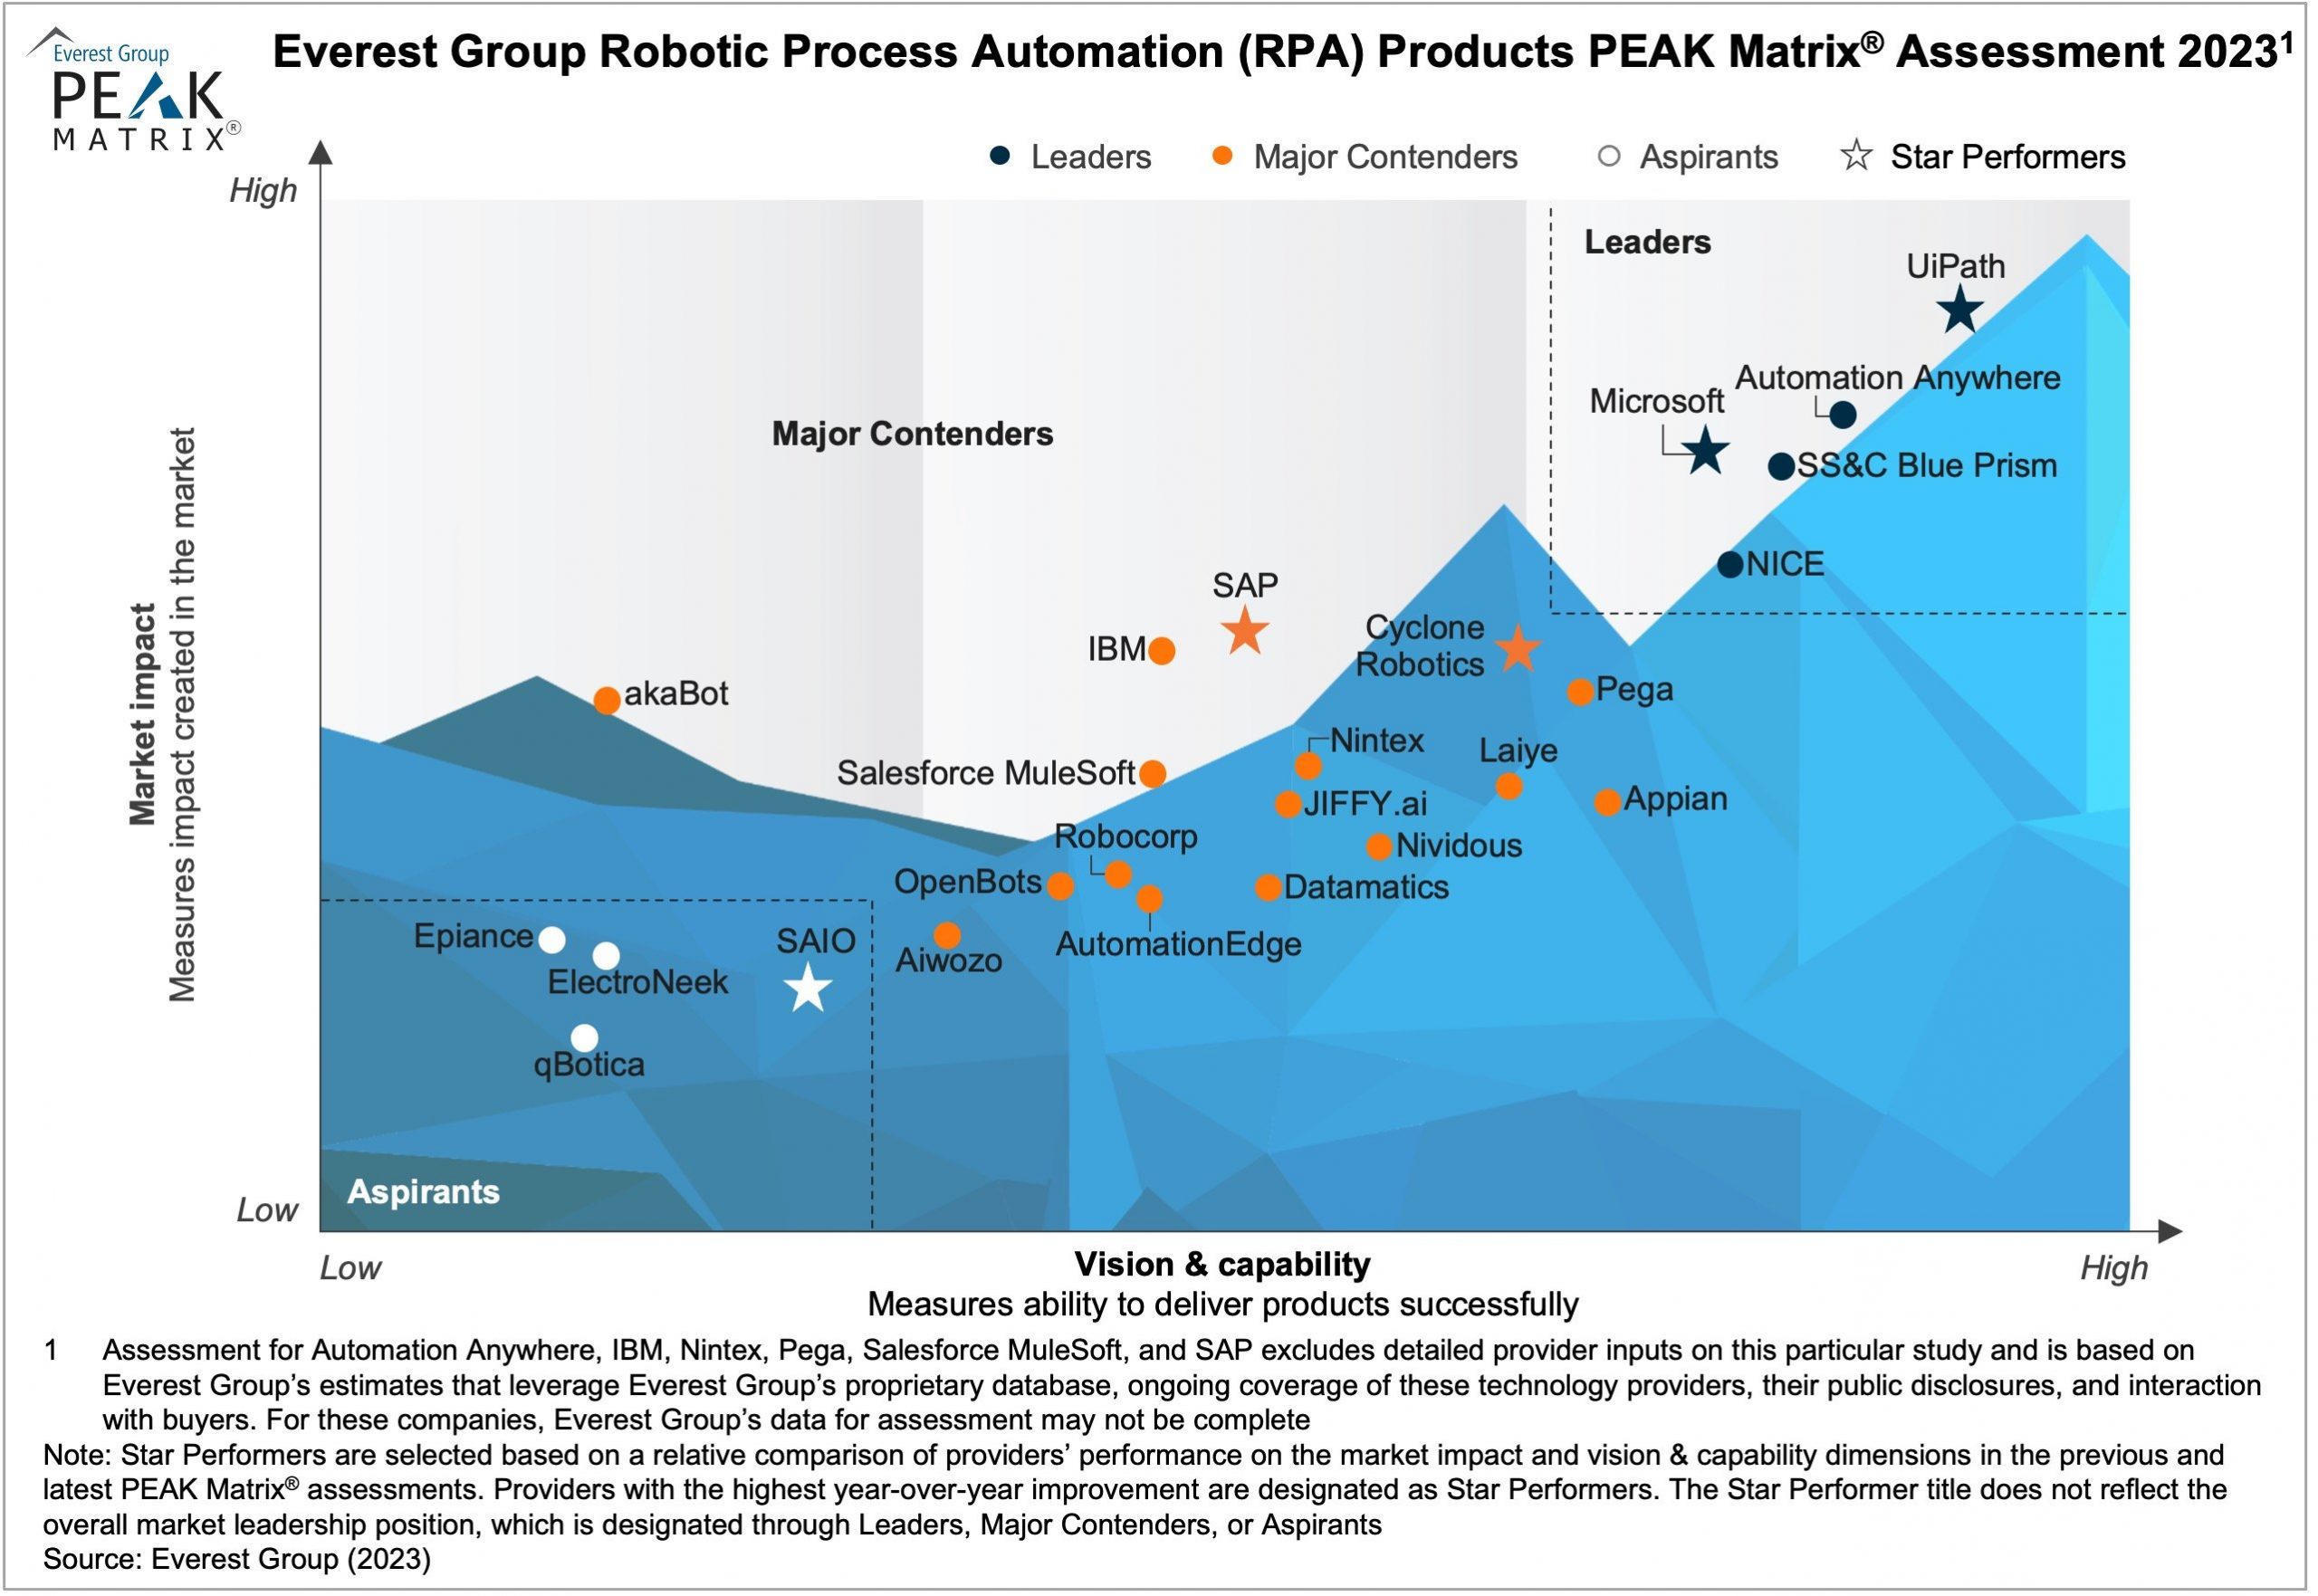 akaBot – Giải pháp Tự động hóa quy trình với trợ lý robot ảo (RPA) là Sản phẩm Make in Viet Nam đầu tiên được vinh danh trong Everest Group PEAK Matrix, danh hiệu Major Contender